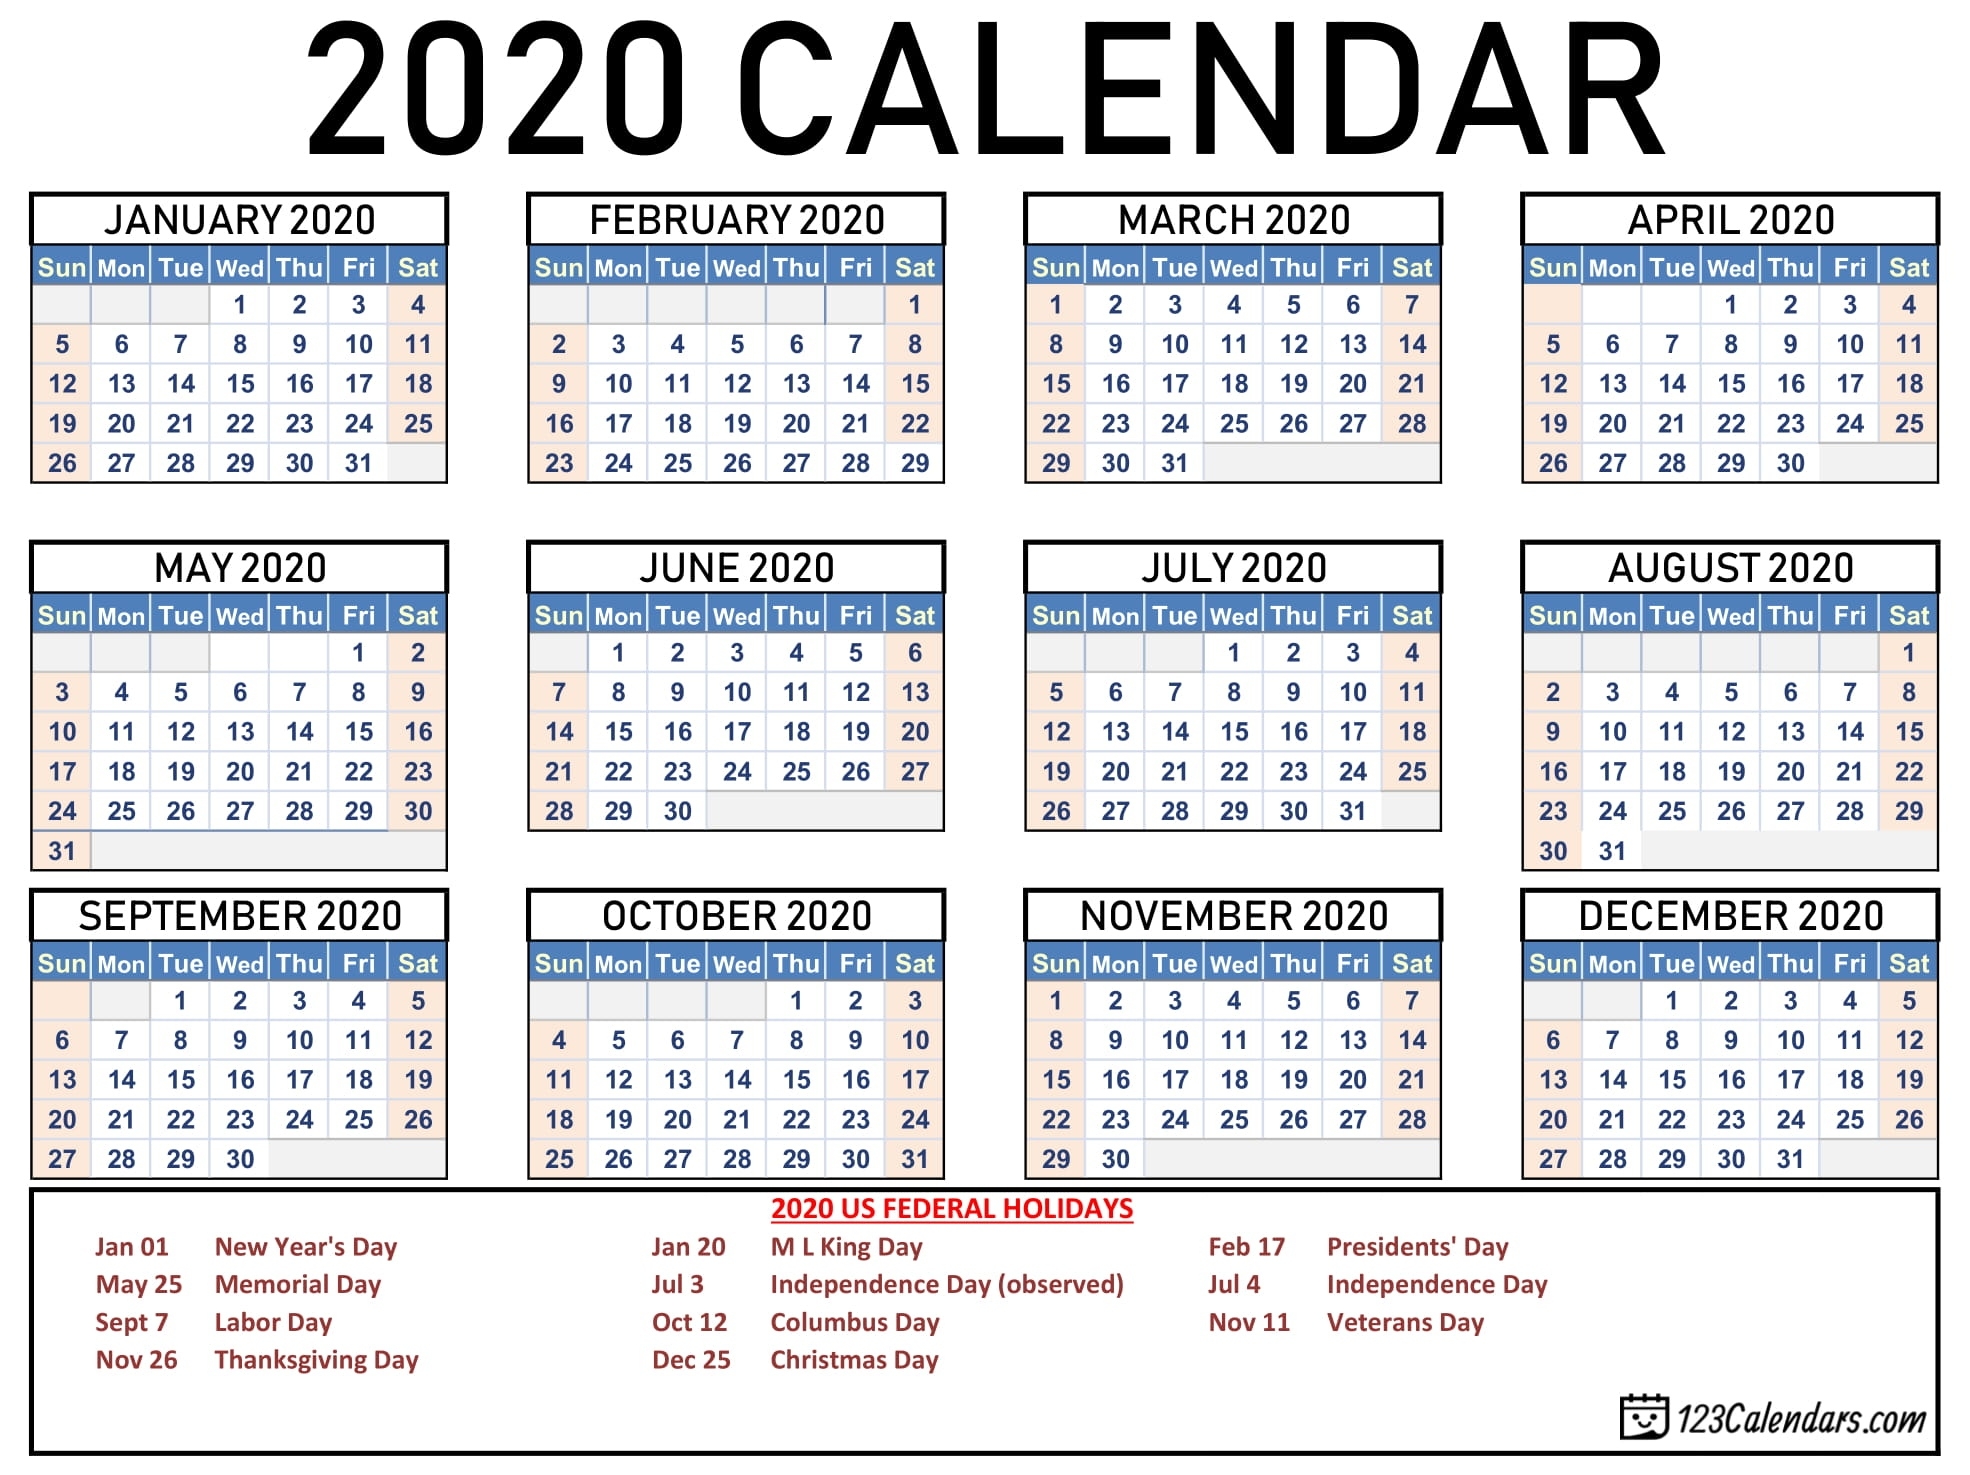 Free Printable 2020 Calendar | 123Calendars Calendar Showing Holidays For 2020